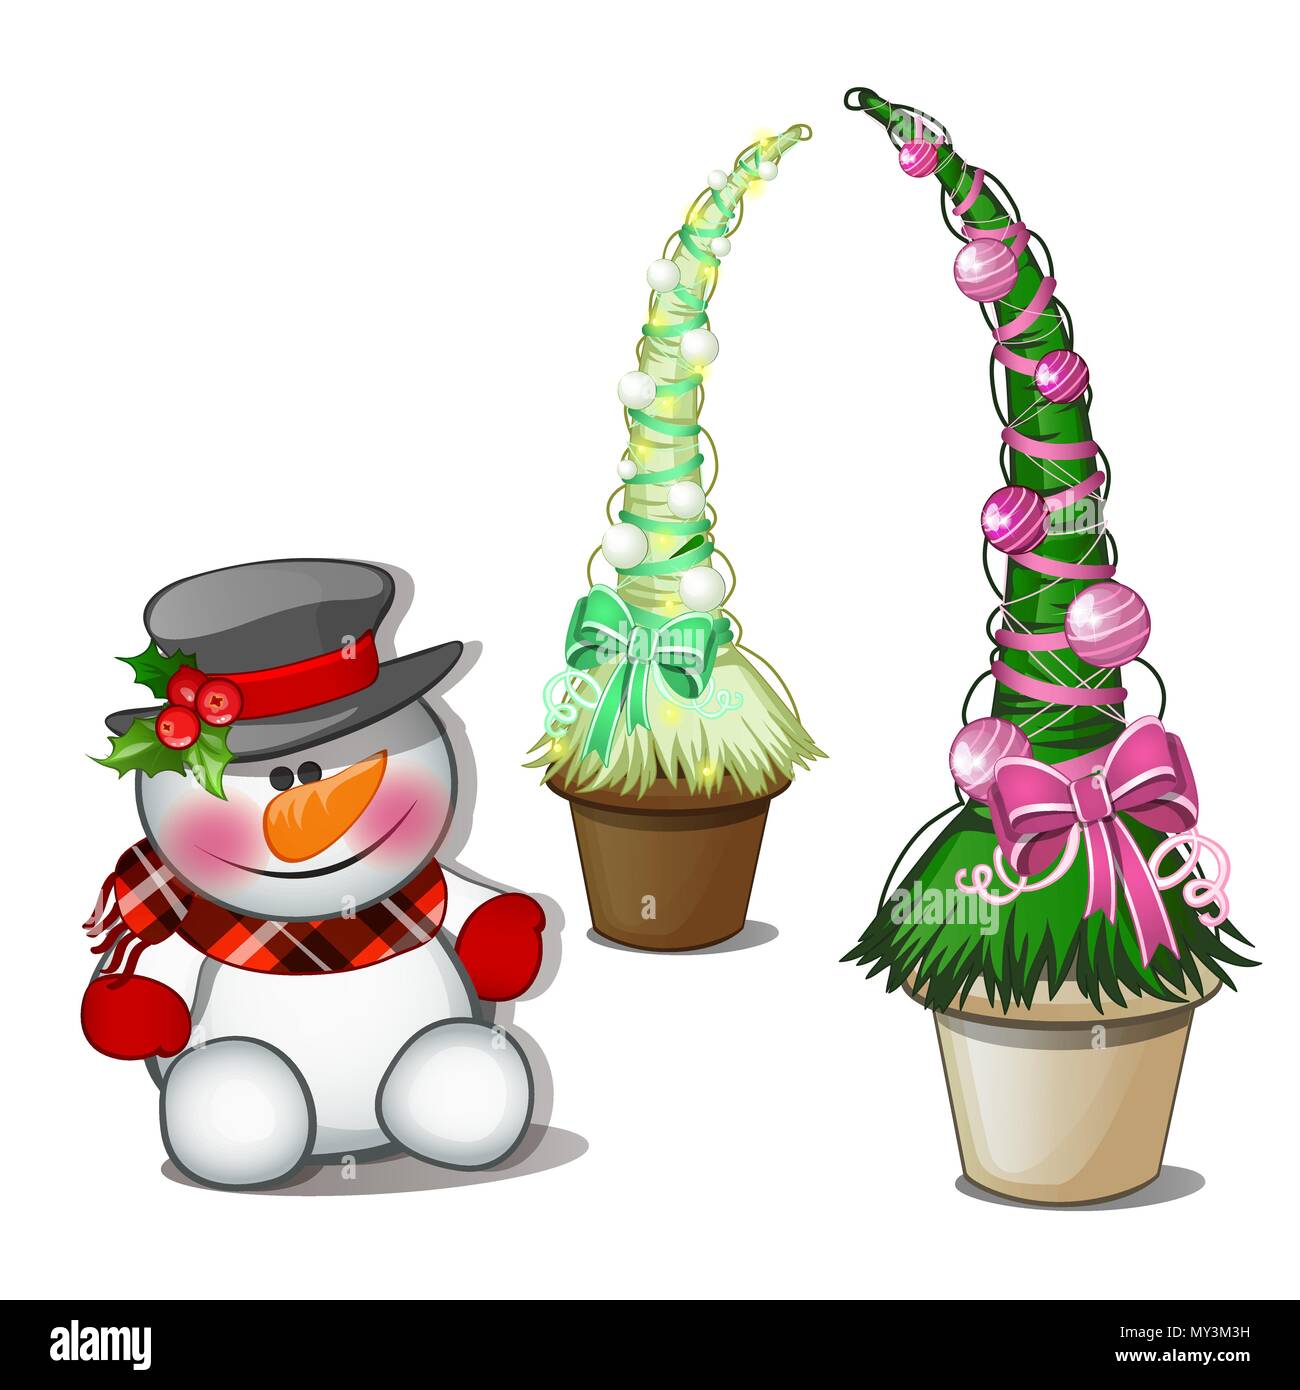 Muñeco de nieve en negro y topiary sombrero en forma de cono con bolas de árbol de Navidad. Bosquejo para la tarjeta de felicitación navideña, póster o invitaciones a fiestas.Los atributos de Navidad y Año Nuevo. Vector. Ilustración del Vector